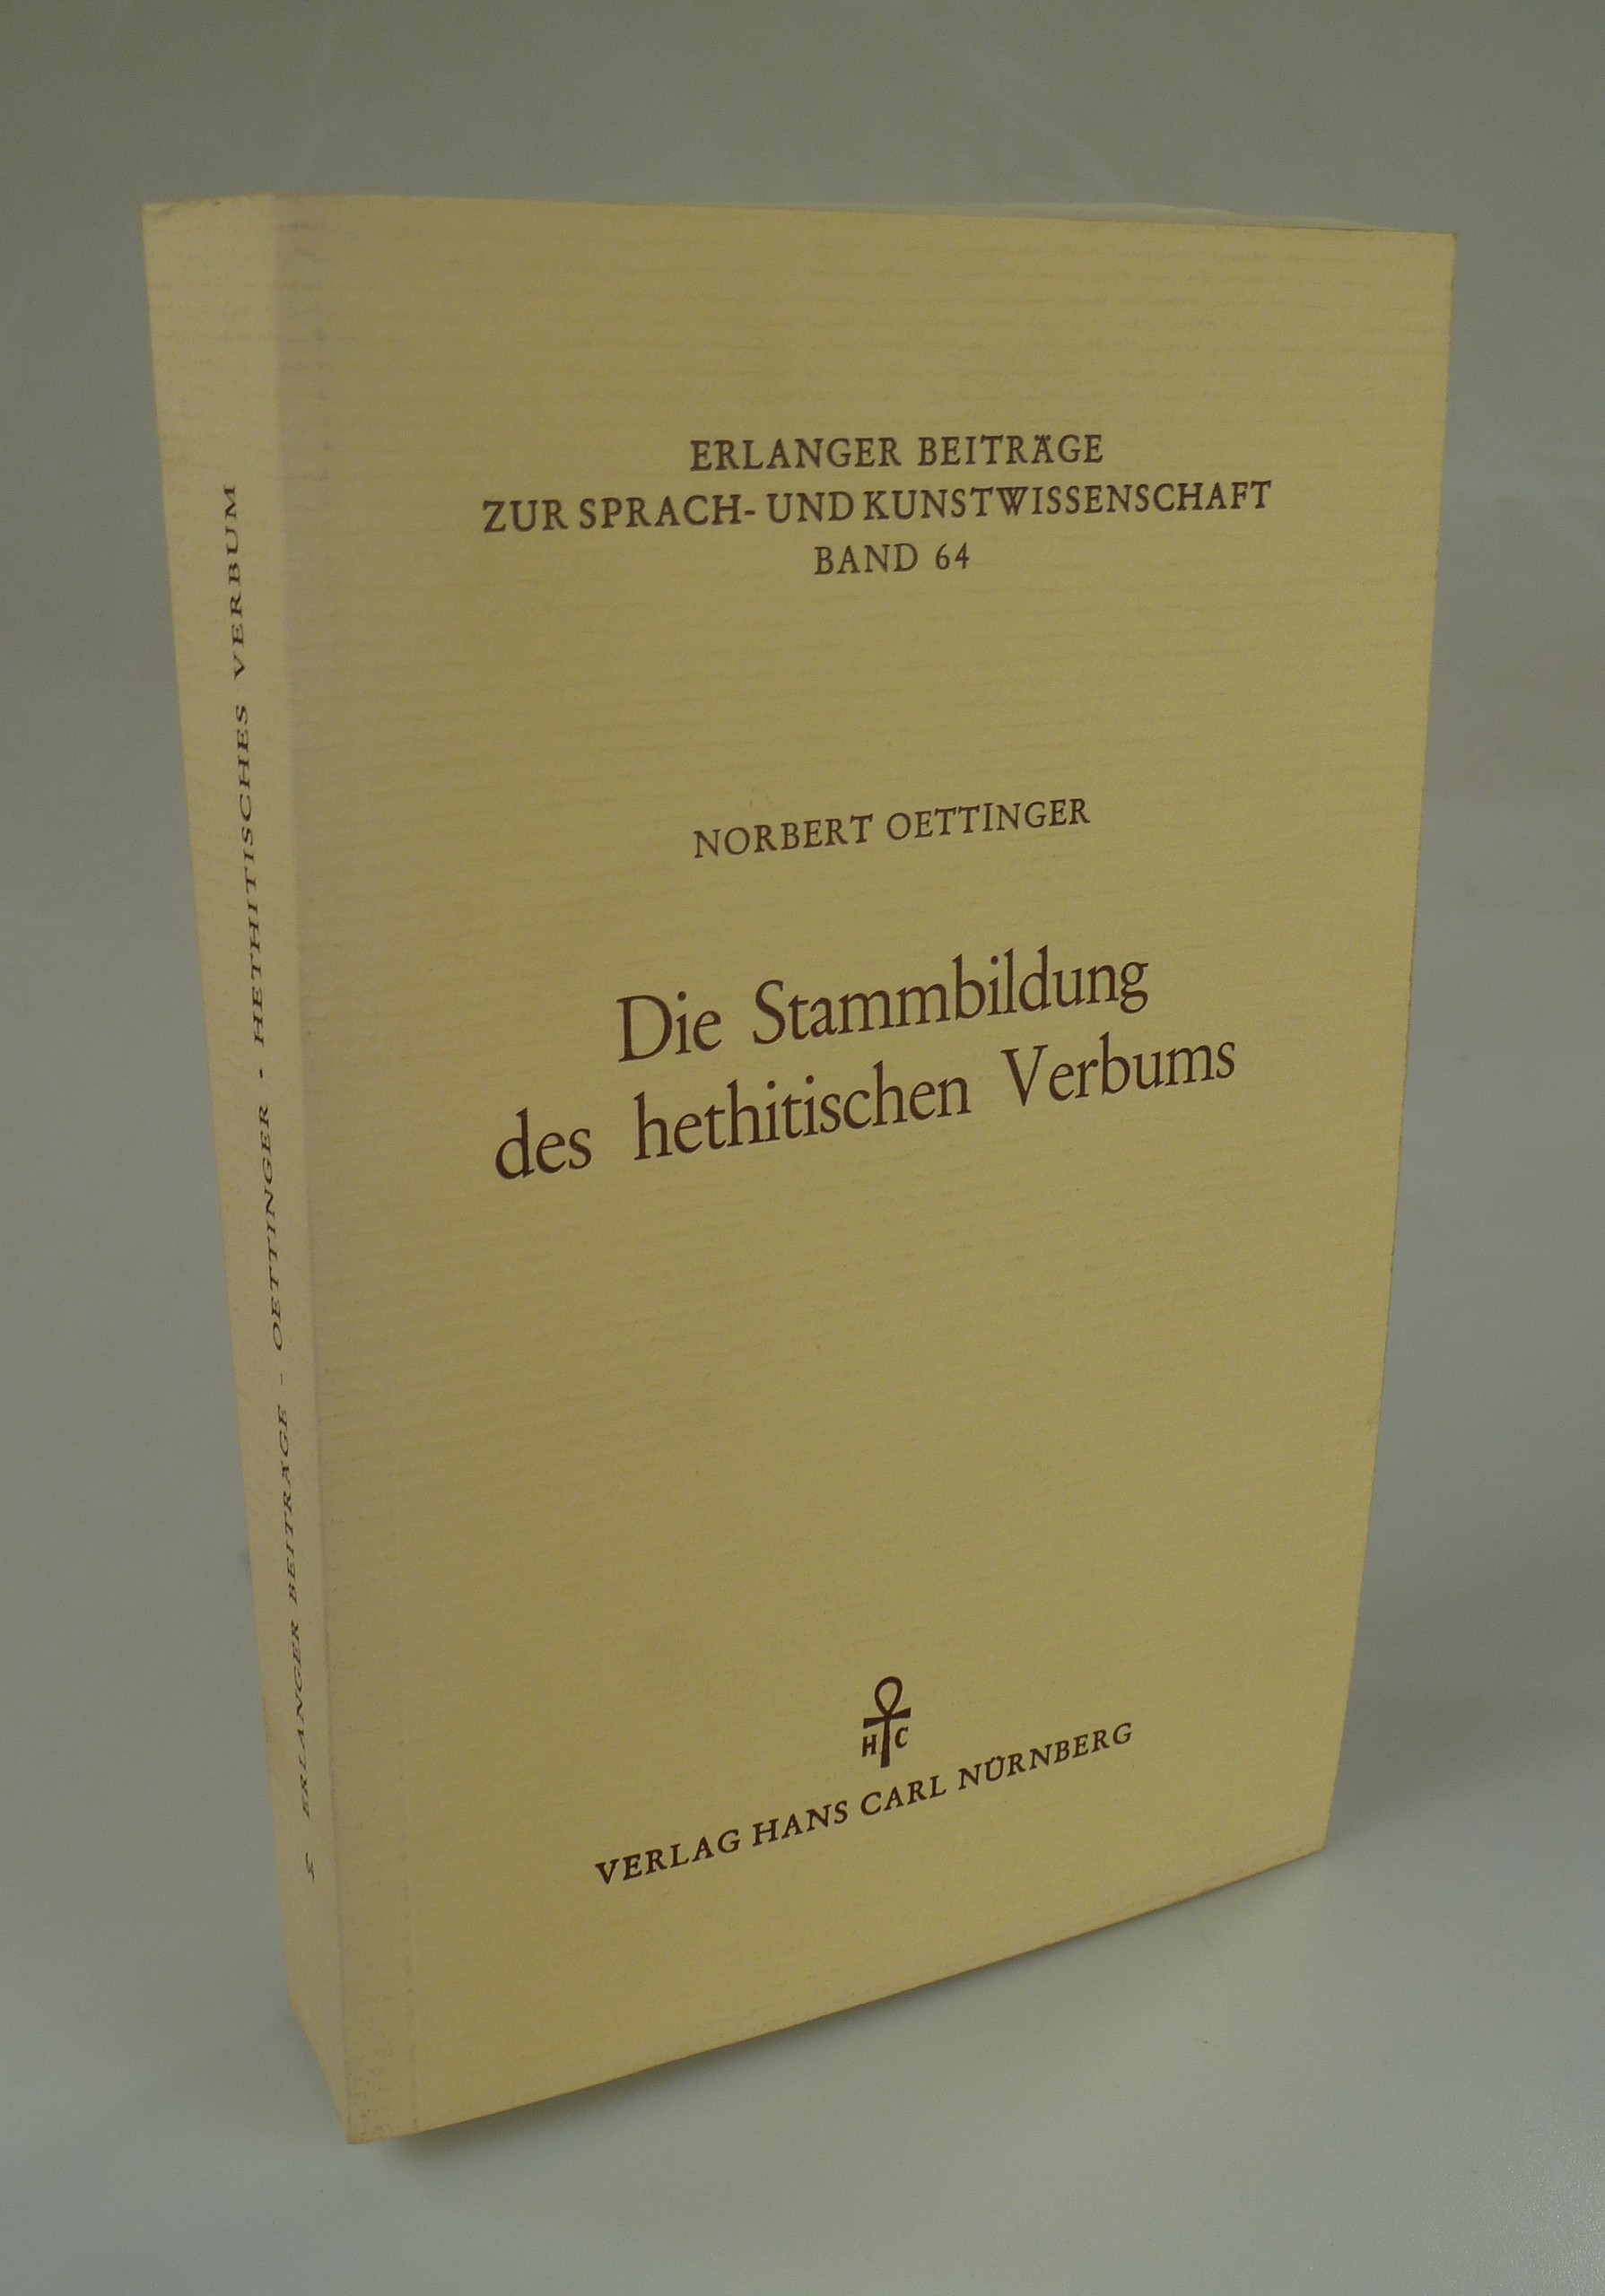 Die Stammbildung des hethitischen Verbums. - OETTINGER, Norbert.